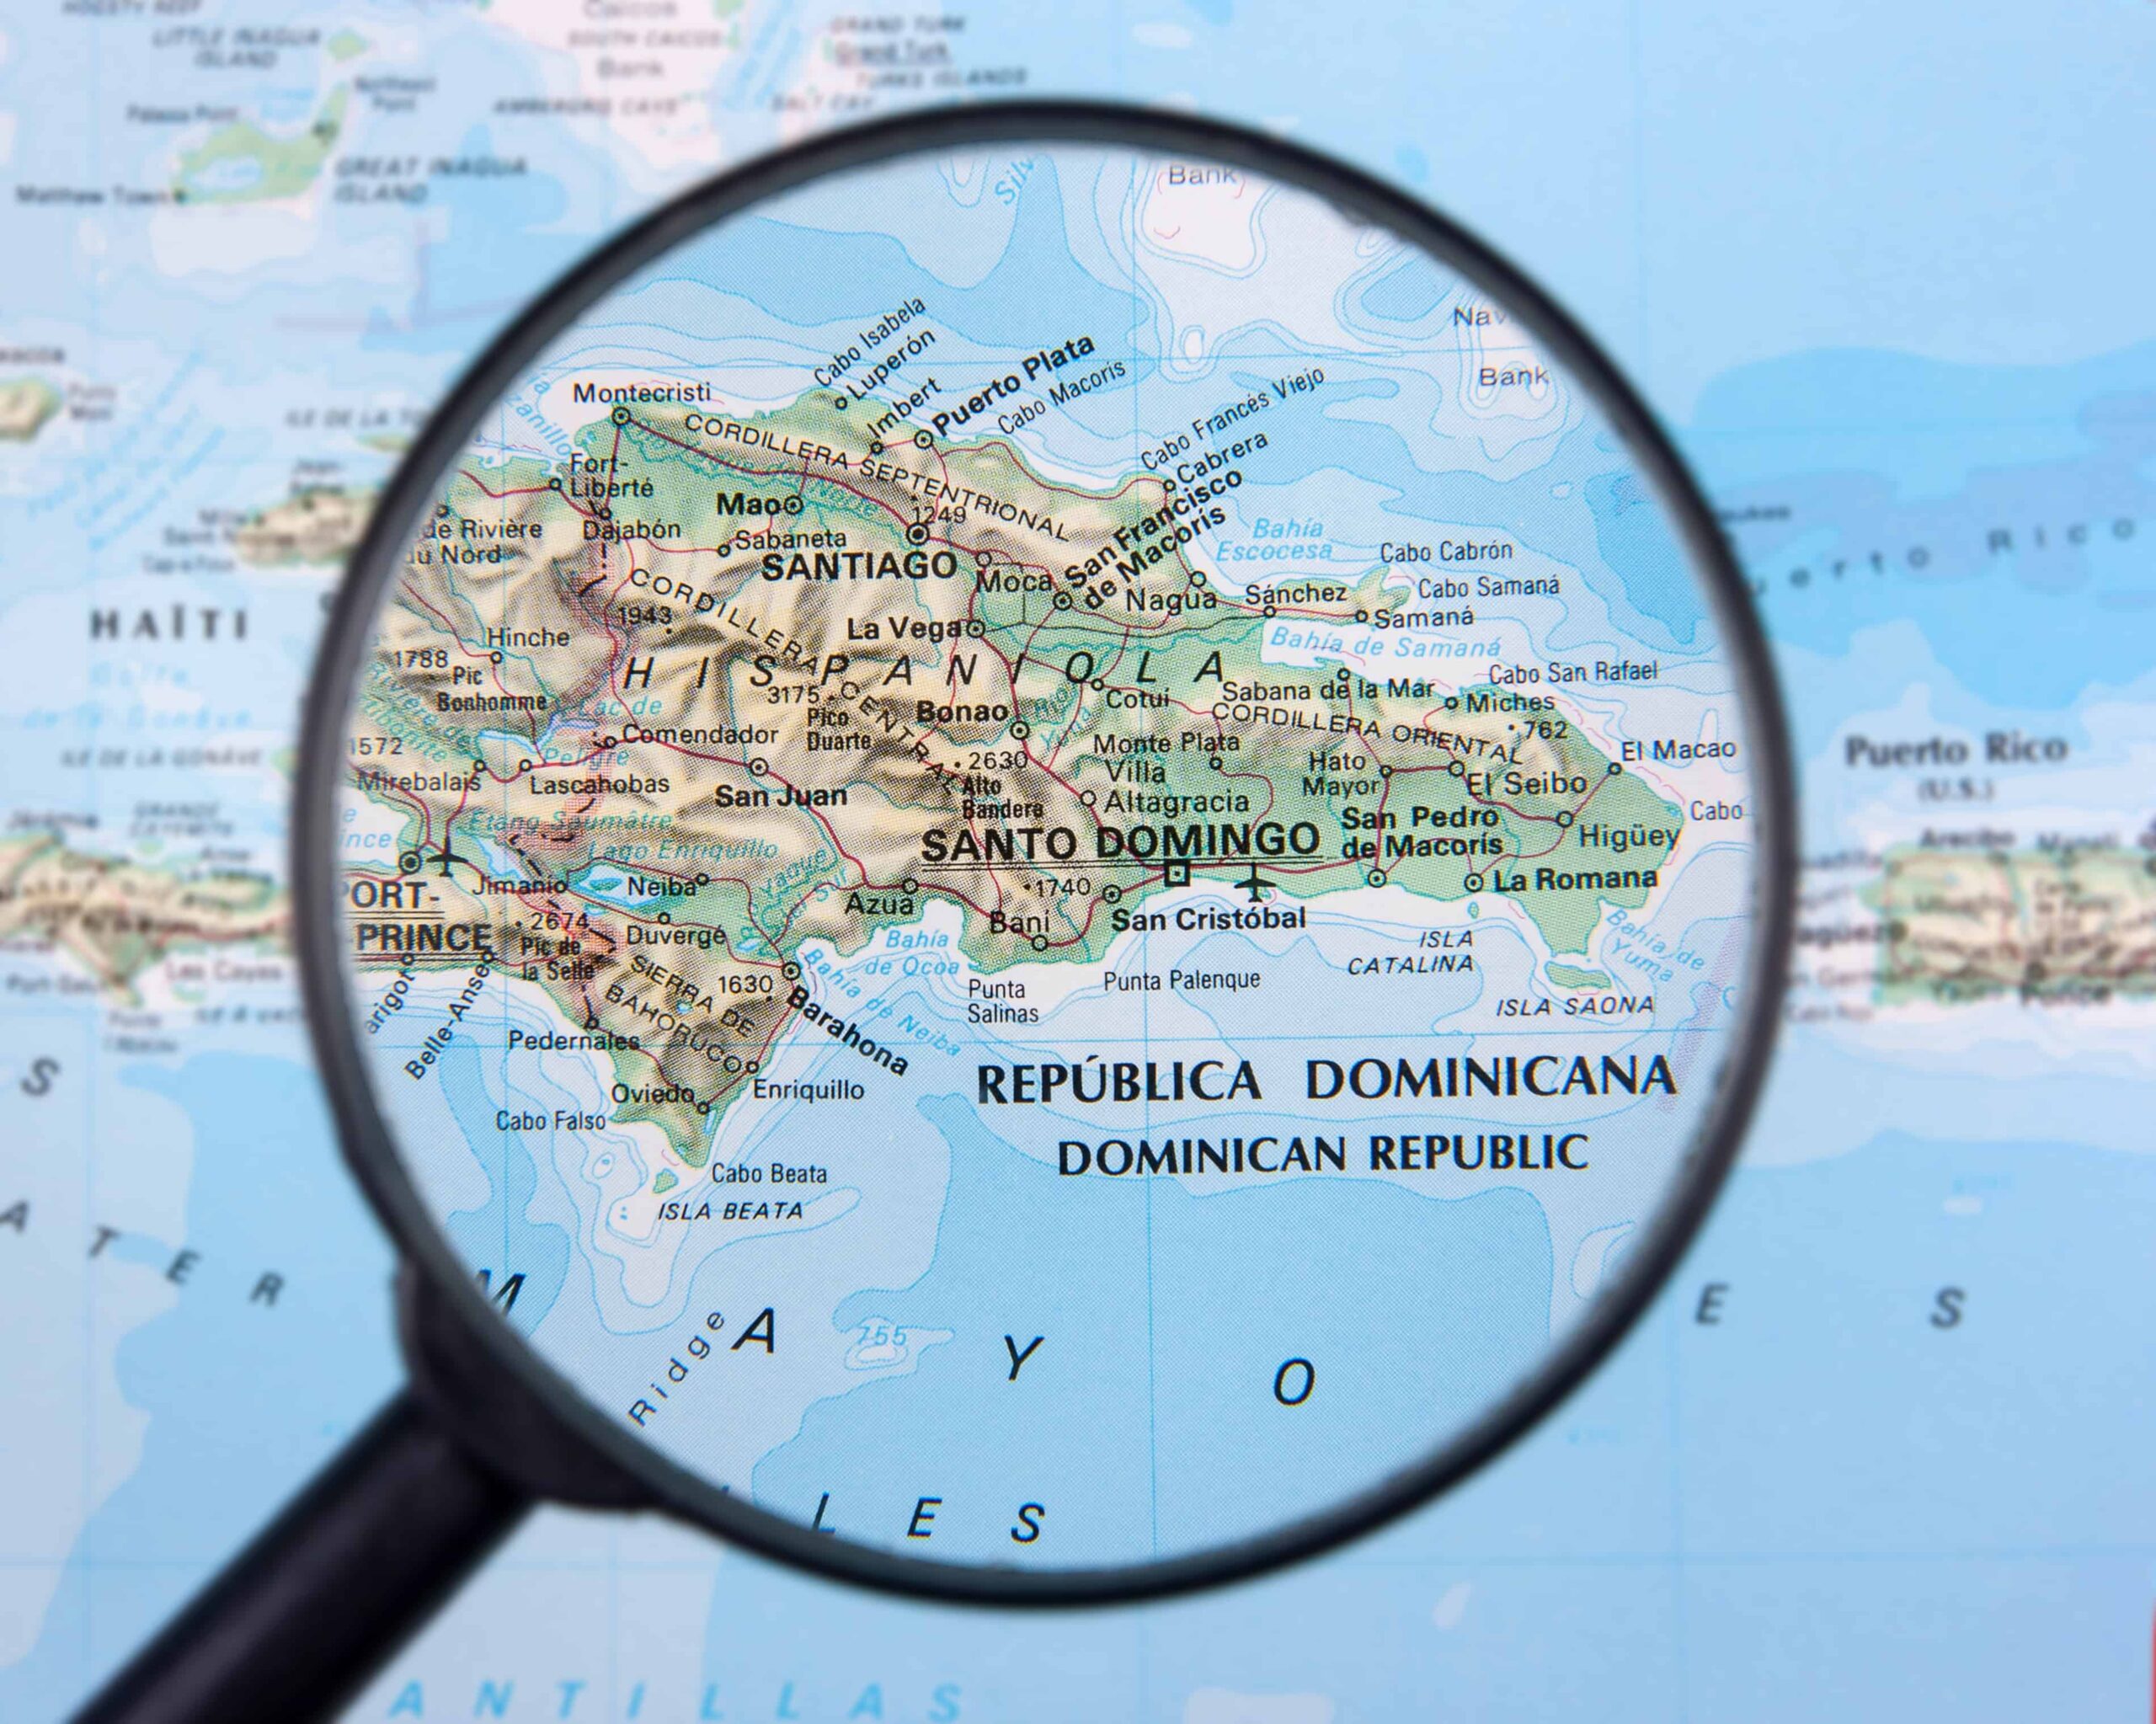 ¿Cuál es la provincia más grande de la República Dominicana?